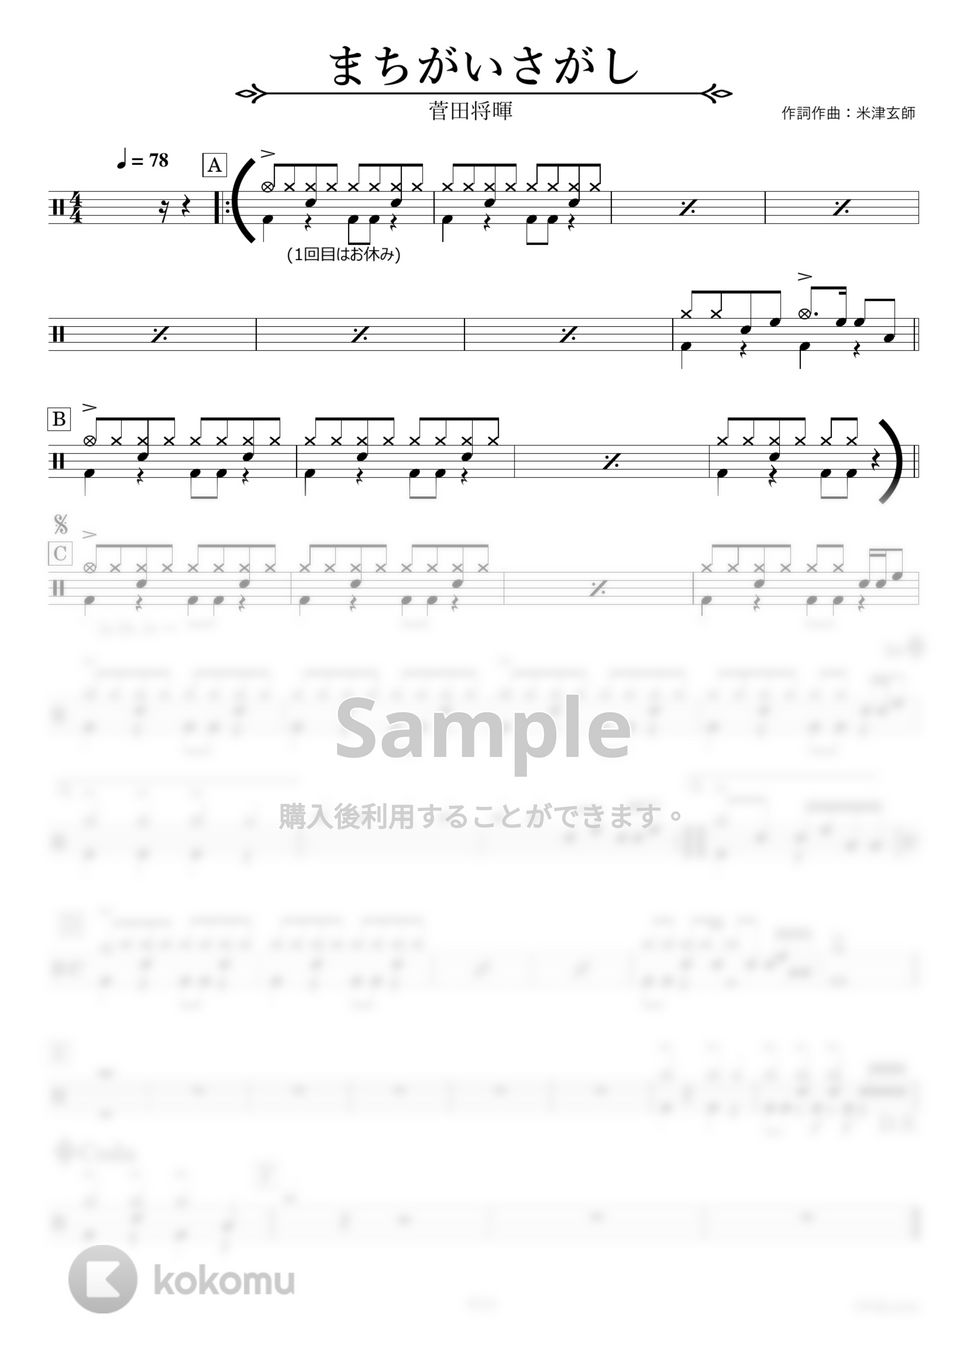 菅田将暉 - まちがいさがし【ドラム楽譜】 by HYdrums